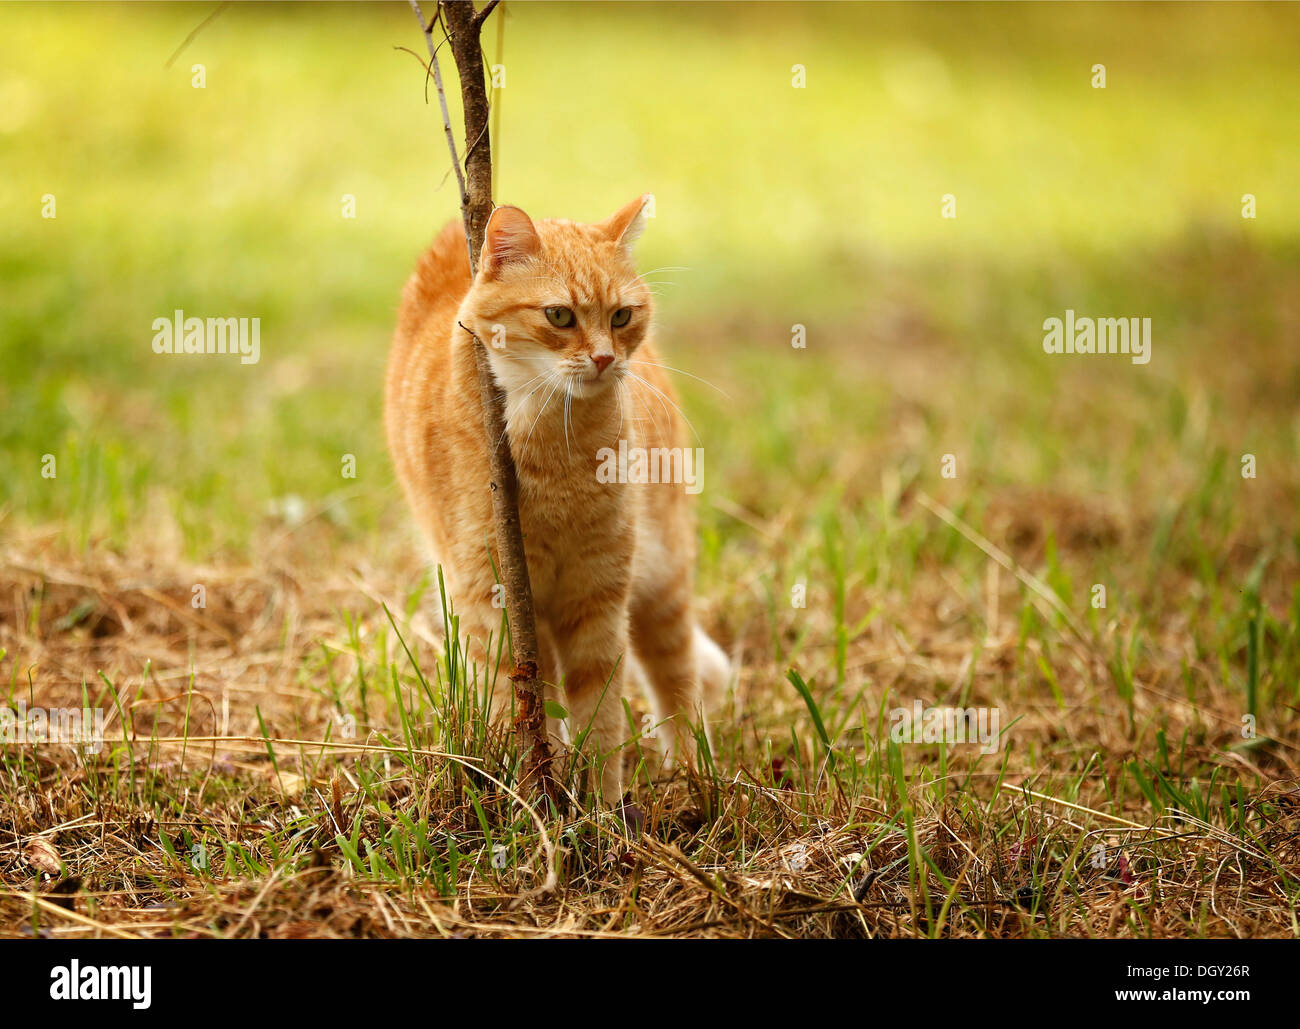 Red tabby cat se frotter contre une bague sur un pré Banque D'Images